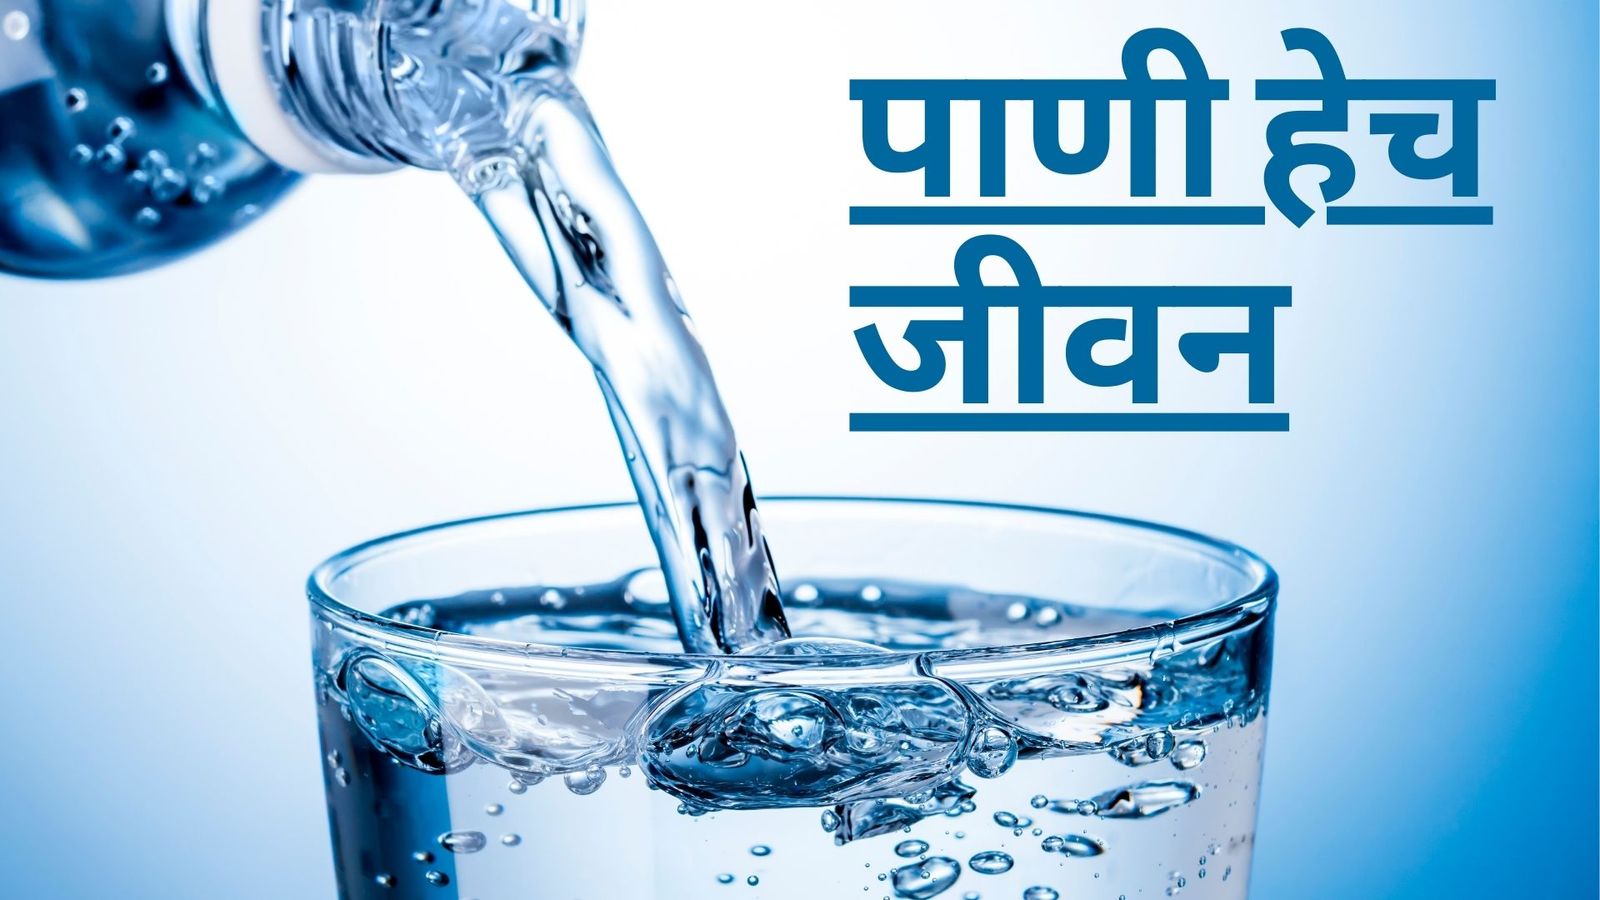 पाणी हे मानवी शरीरासाठी अत्यंत आवश्यक आहे. मानवी शरीराच्या सुमारे 60% भाग पाण्याने बनलेला आहे. पाणी शरीरातील सर्व कार्यांसाठी आवश्यक आहे.